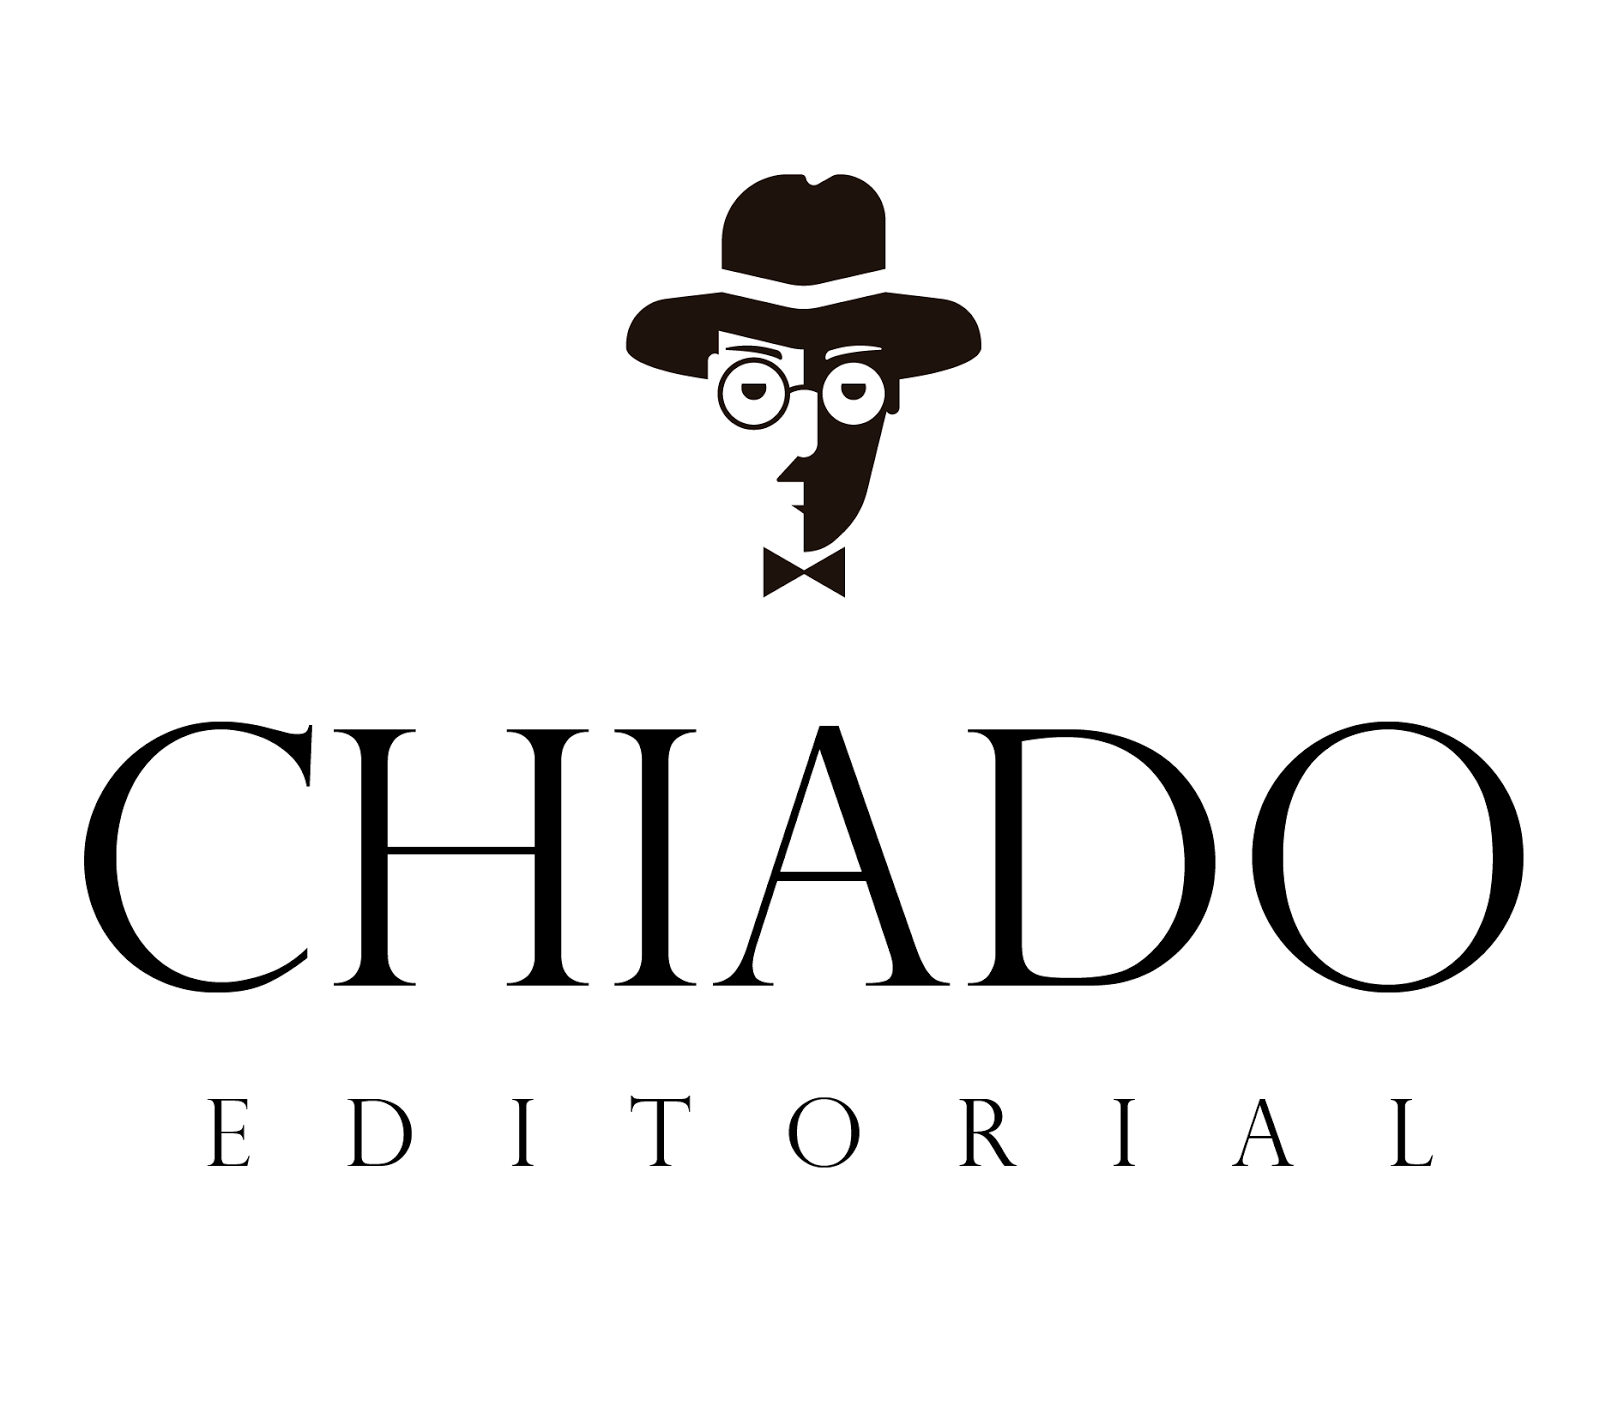 Chiado Editorial